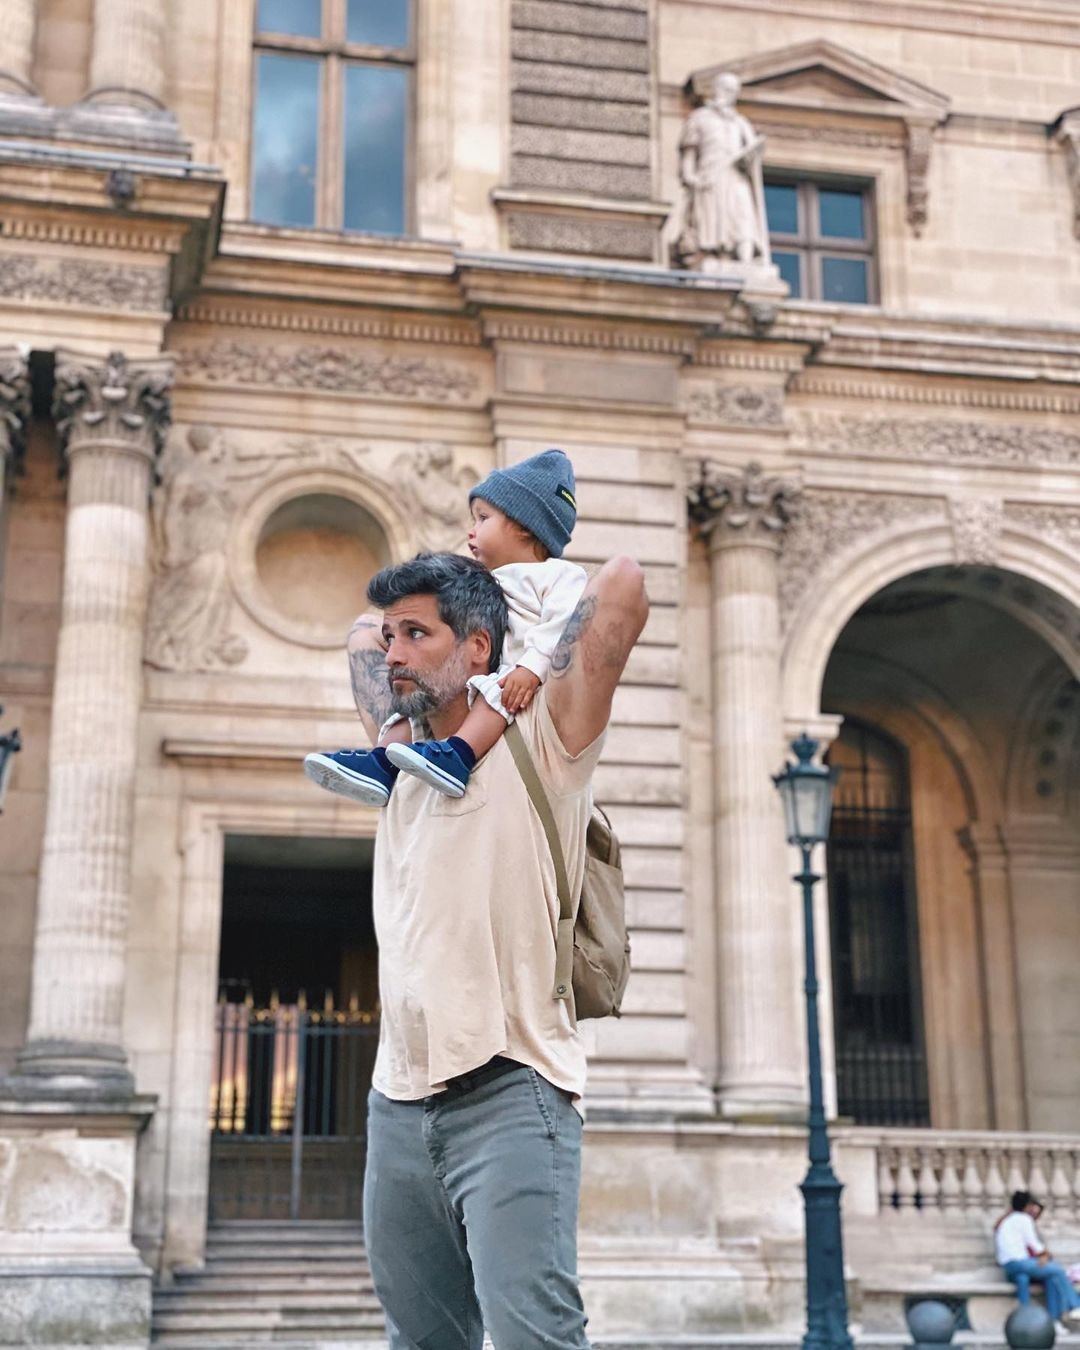 Giovanna Ewbank e Bruno Gagliasso passeiam por Paris com os filhos (Foto: Reprodução/Instagram)